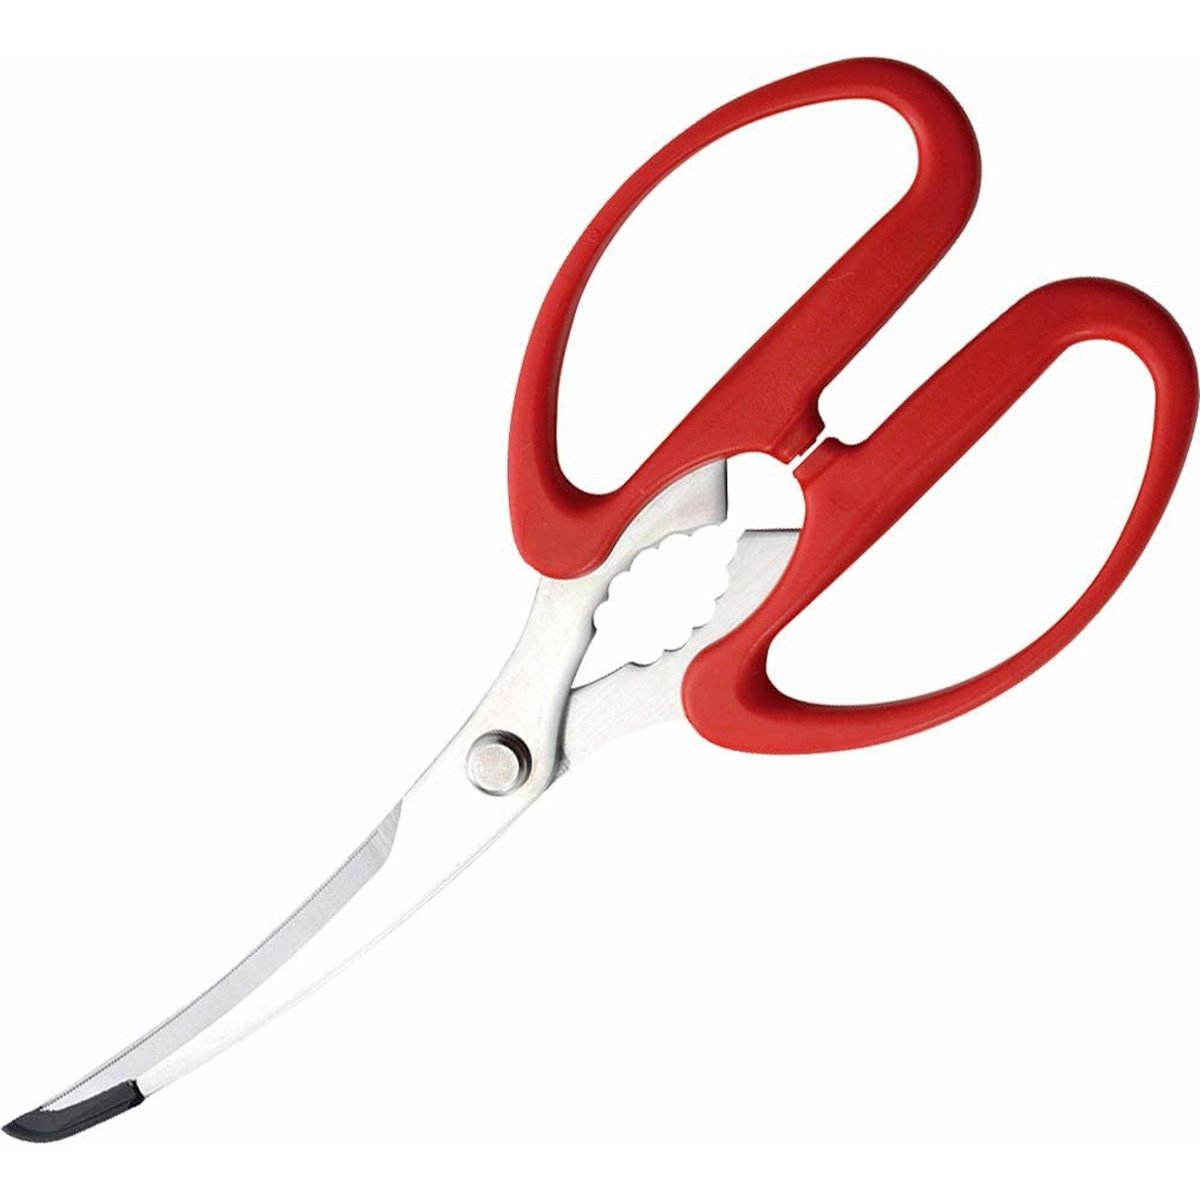 Shimomura Murato Forged Stainless Detachable Kitchen Scissors MTH-401 by Japanese Taste